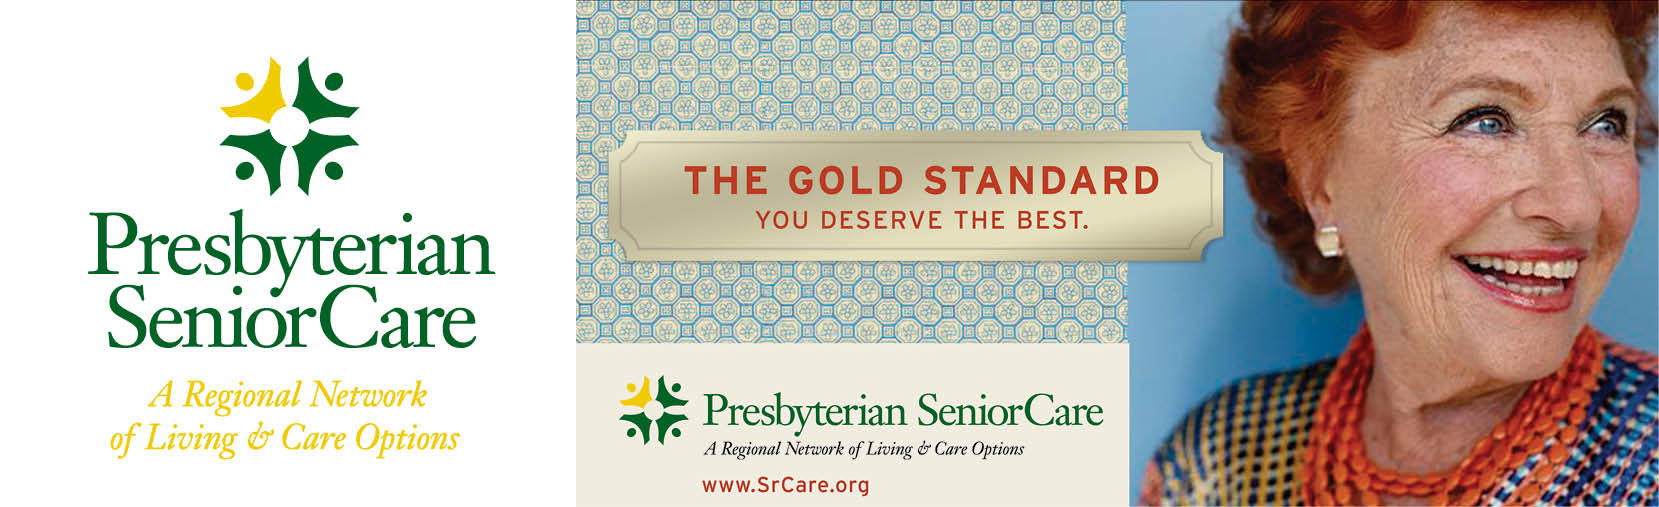 Presbyterian SeniorCare Brand